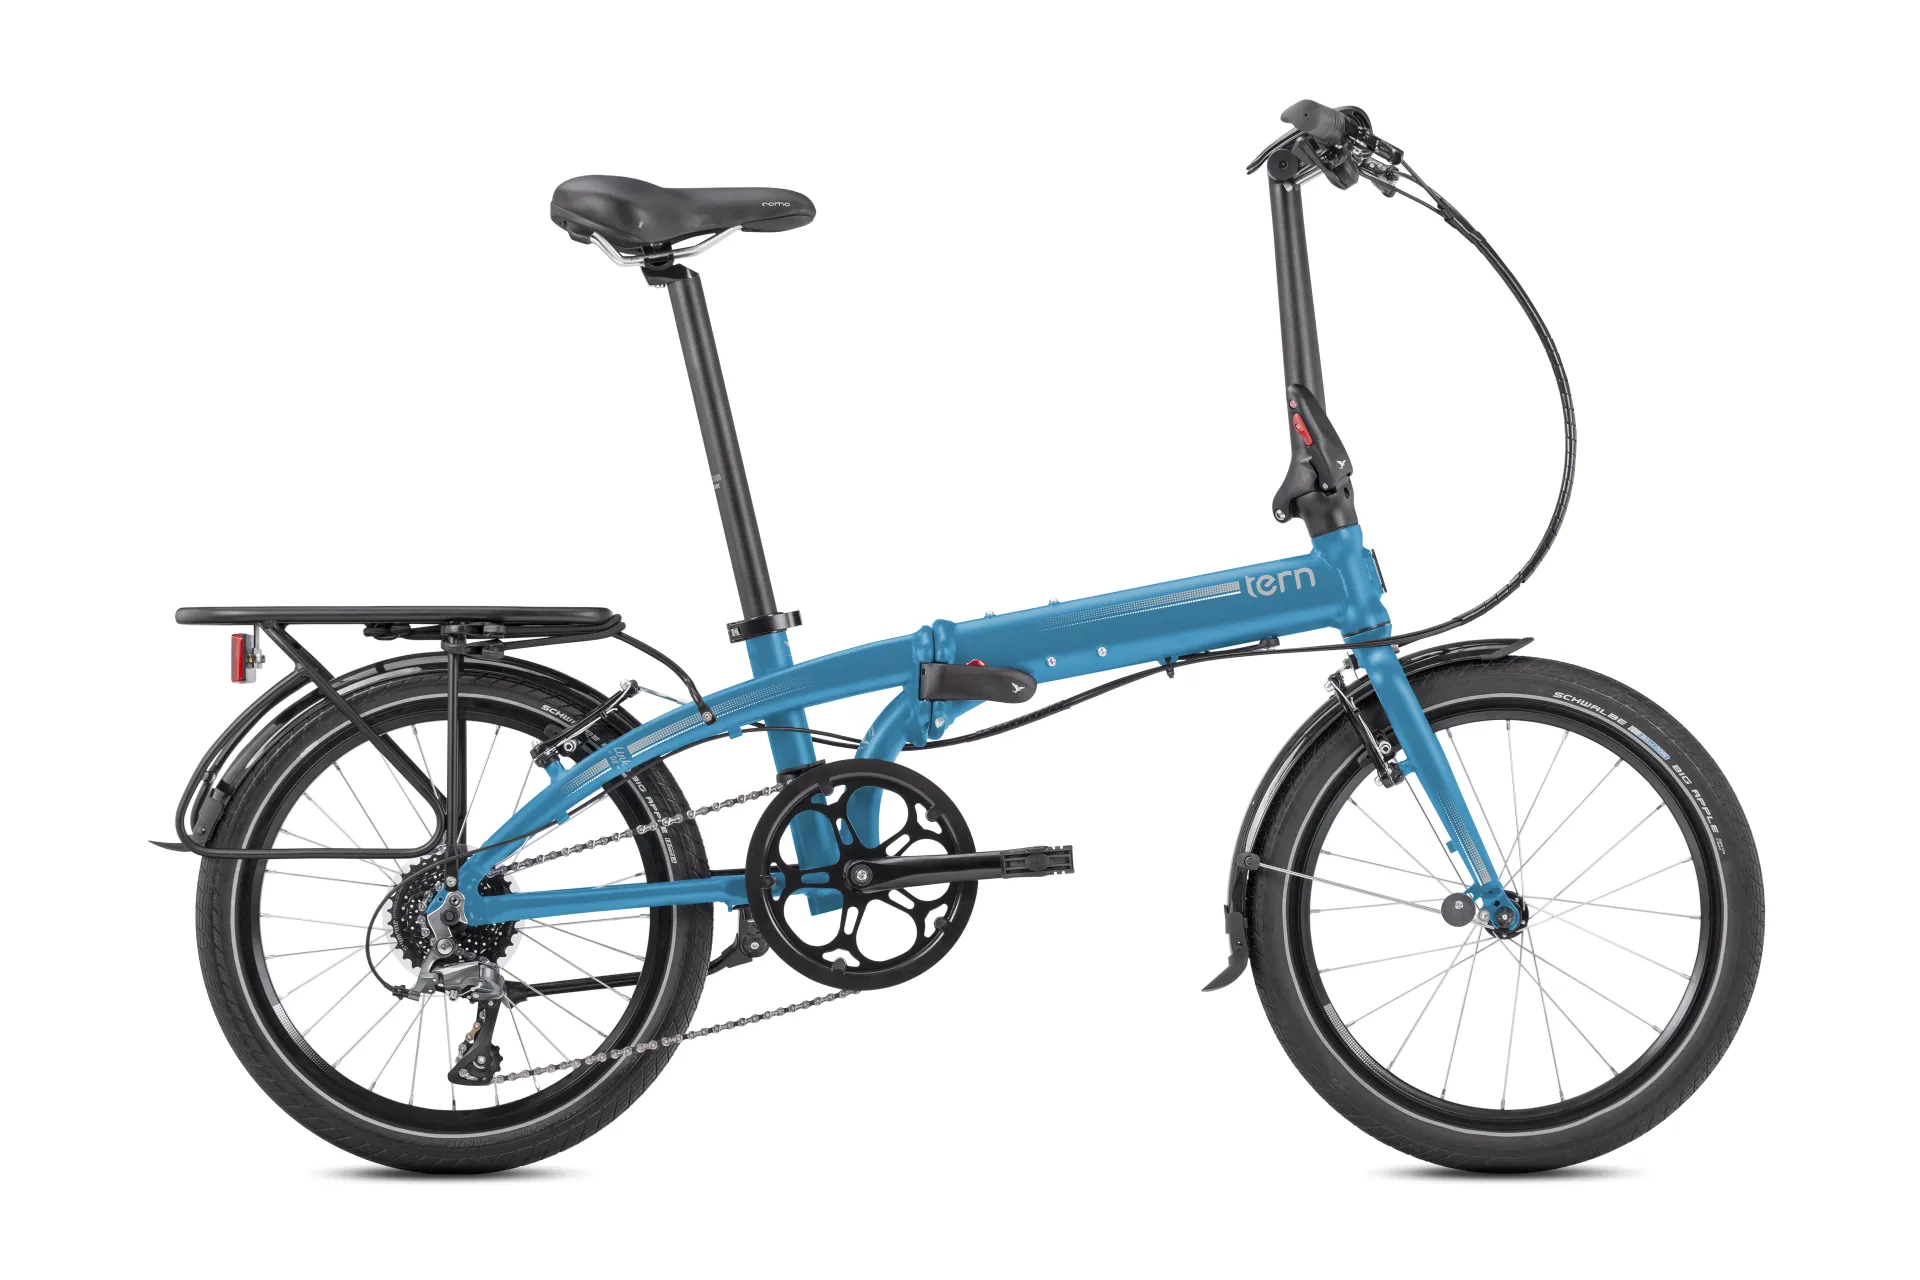 Link D8: Built tough for urban riding | Tern Bicycles